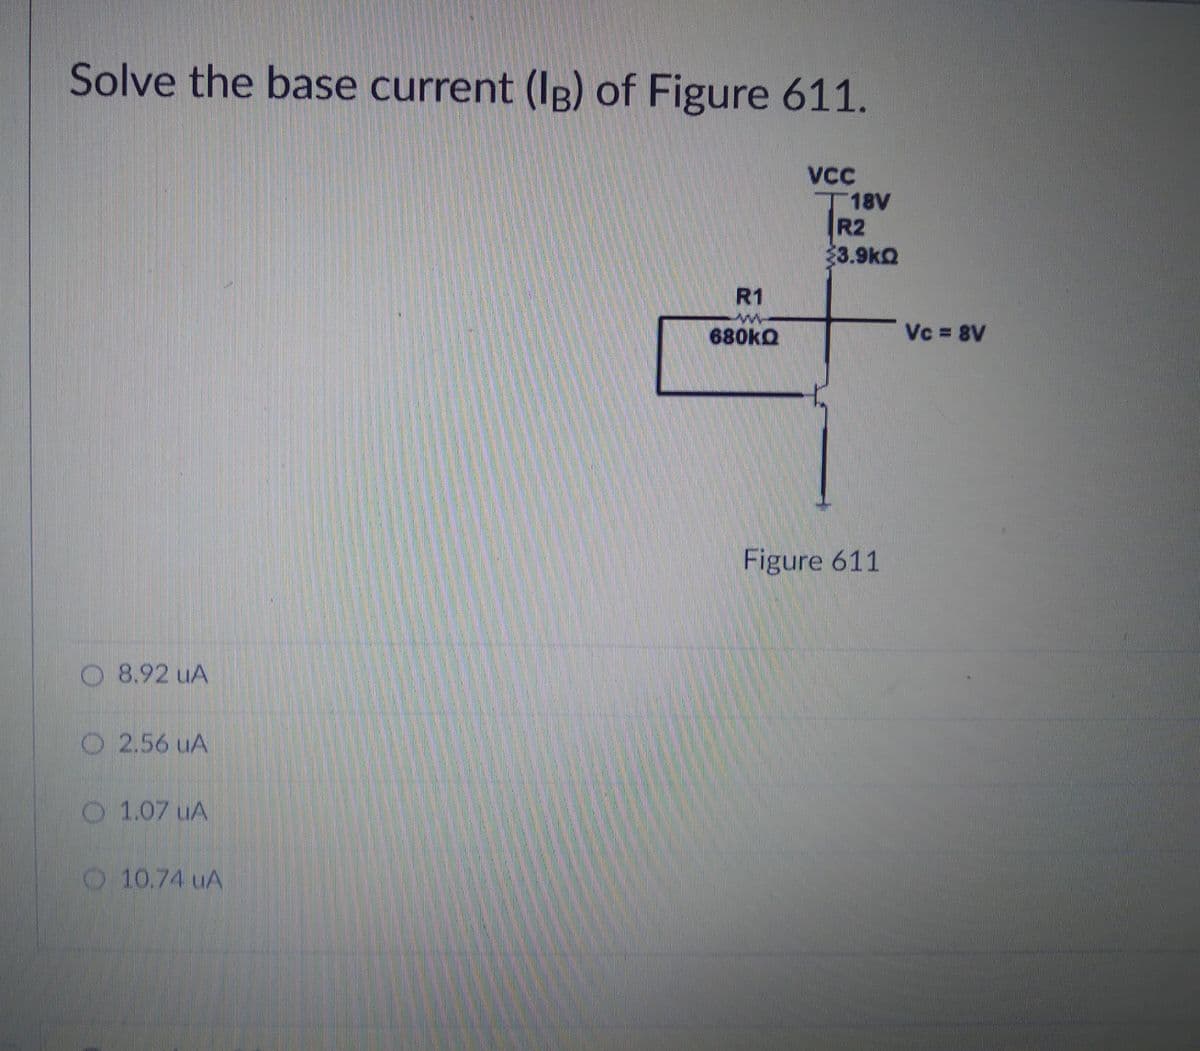 Solve the base current (Ig) of Figure 611.
丁18V
R2
3.9kQ
R1
680KQ
Vc 8V
Figure 611
O 8.92 uA
O 2.56 uA
O 1.07 uA
O 10.74 uA
